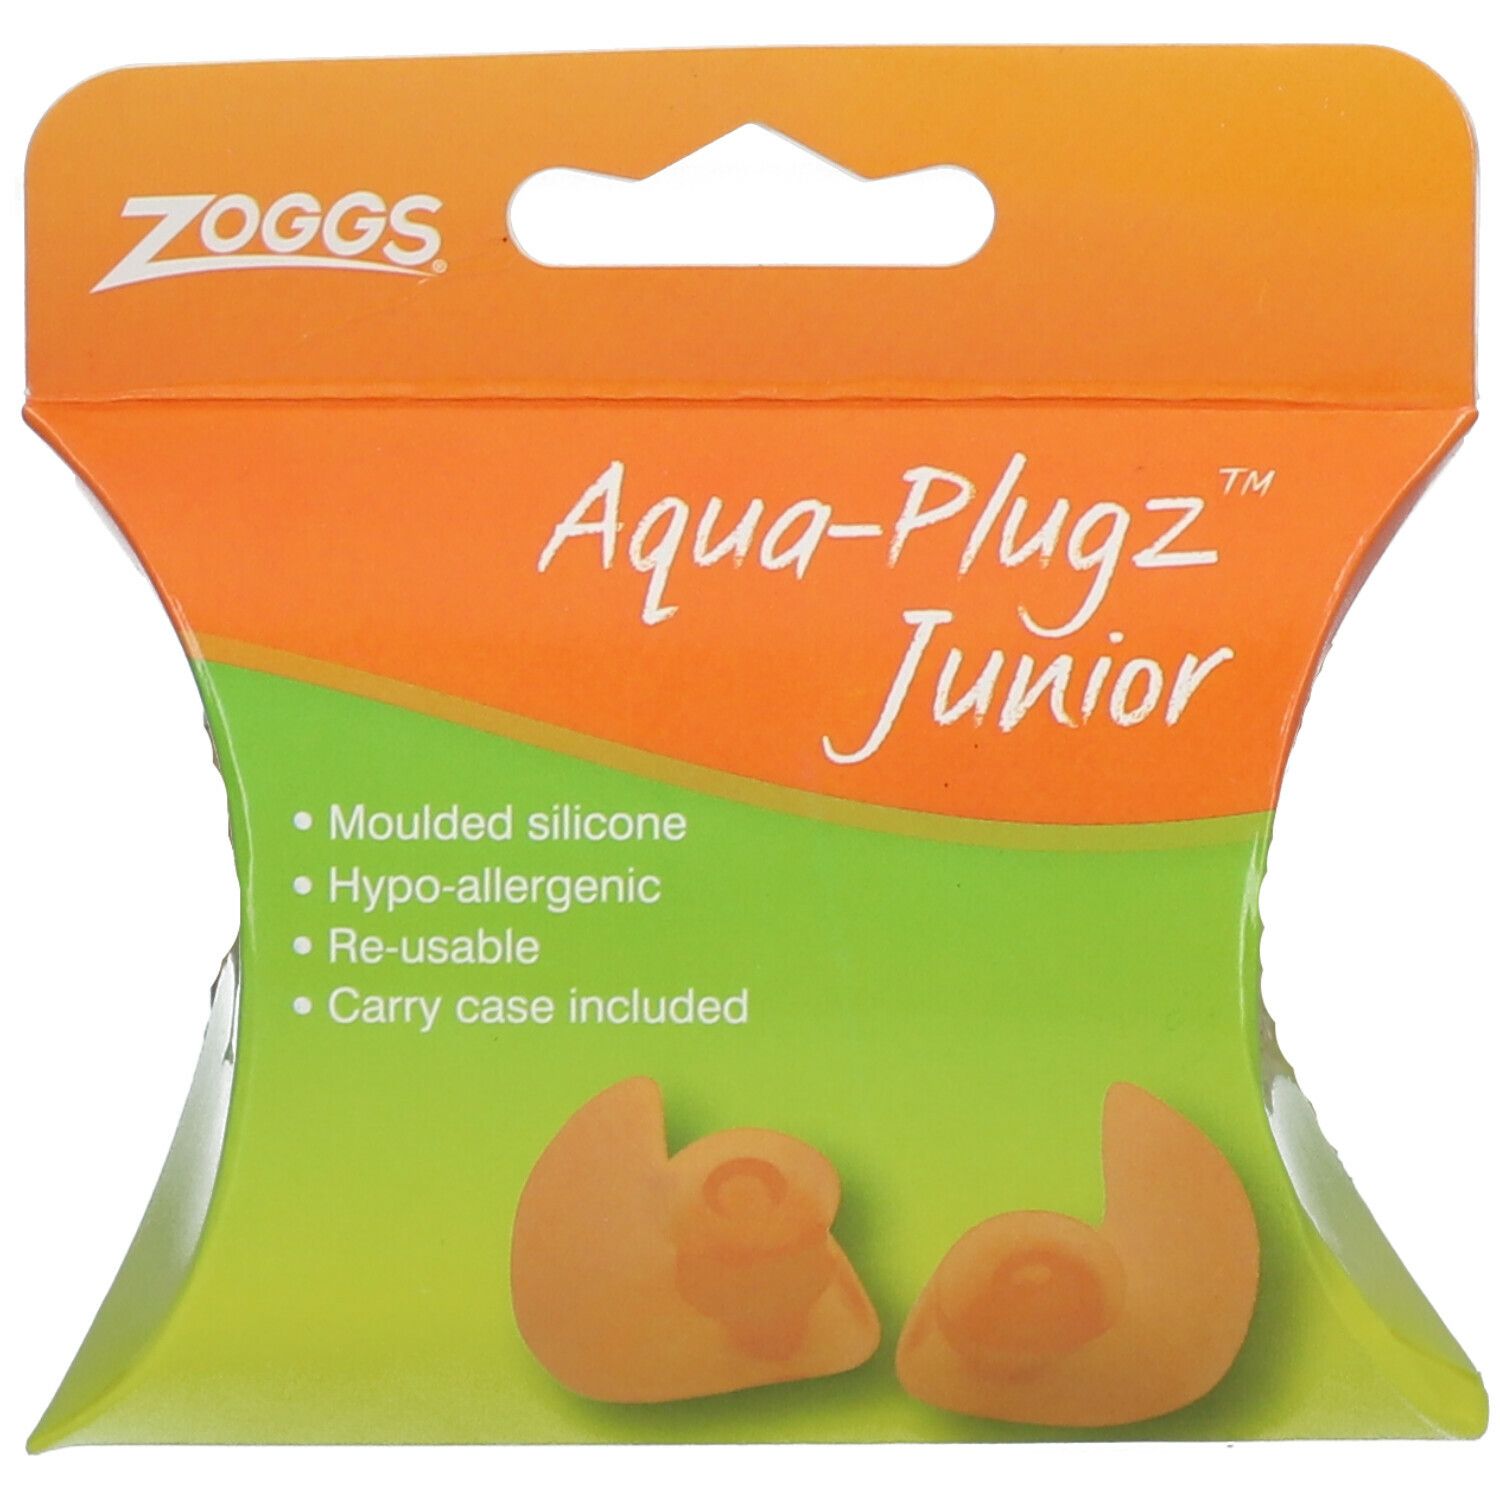 Zoggs aqua plugz junior